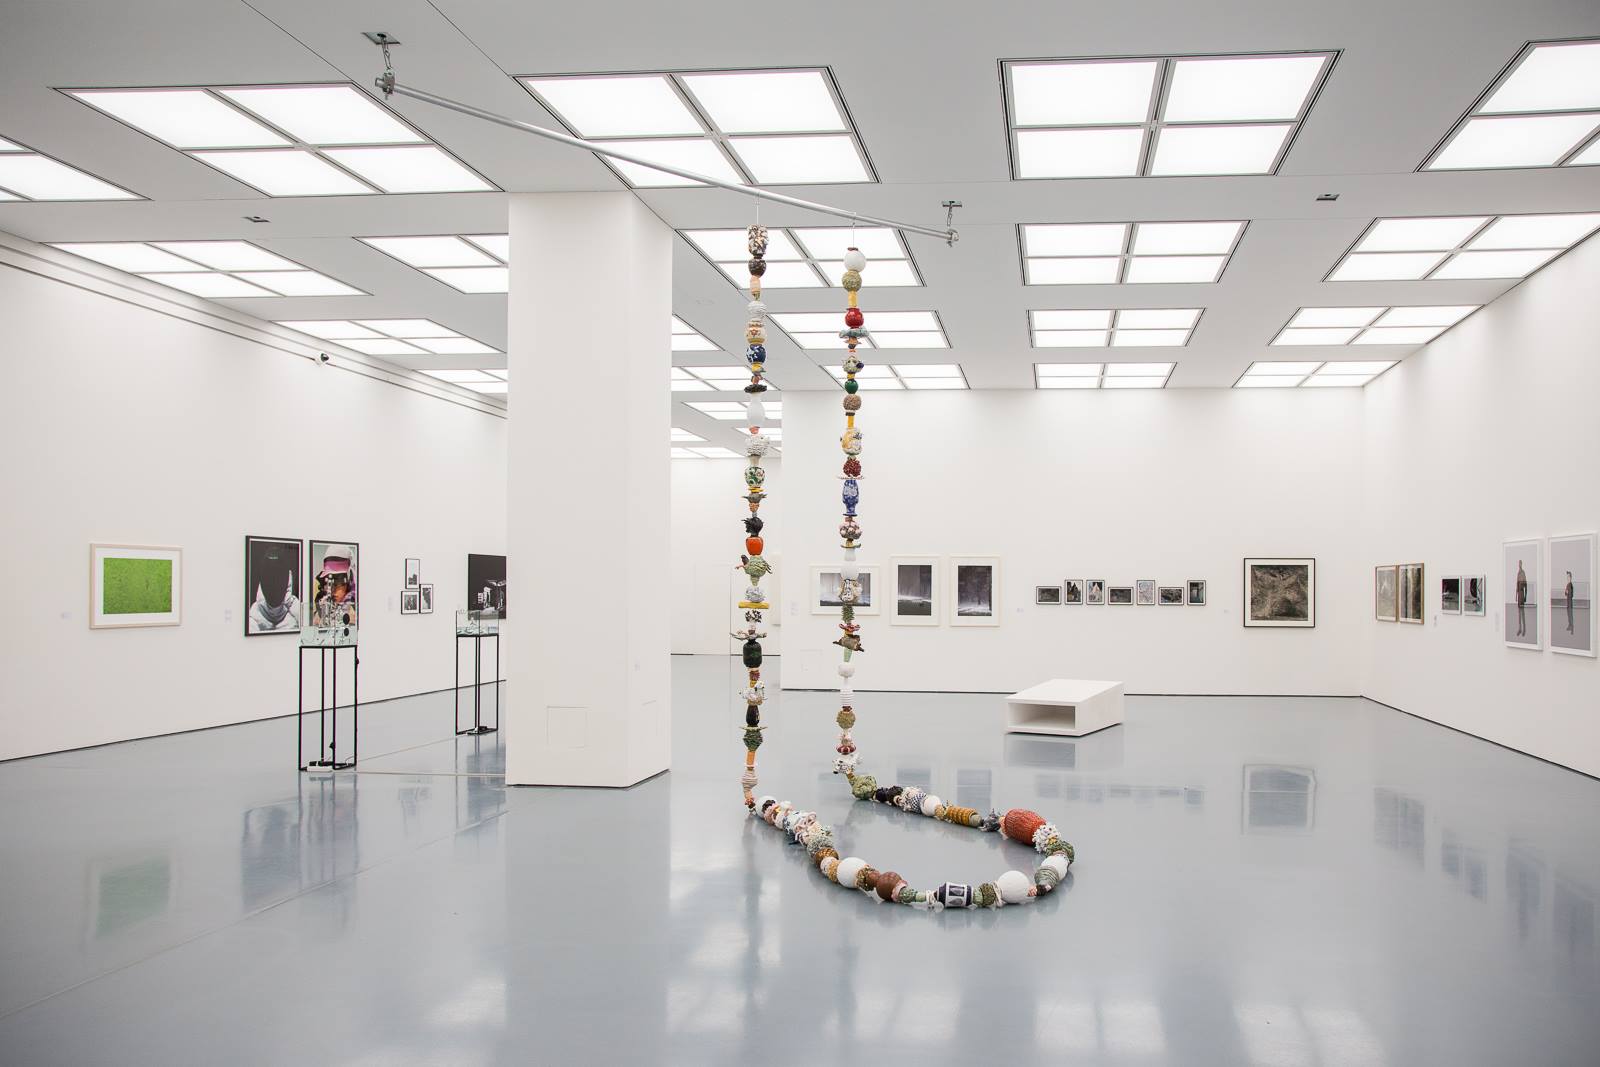 Museum Kunstpalast, Düsseldorf, 2018
Kette, here: 17 m
Foto: Evangelos Koukouwitakis